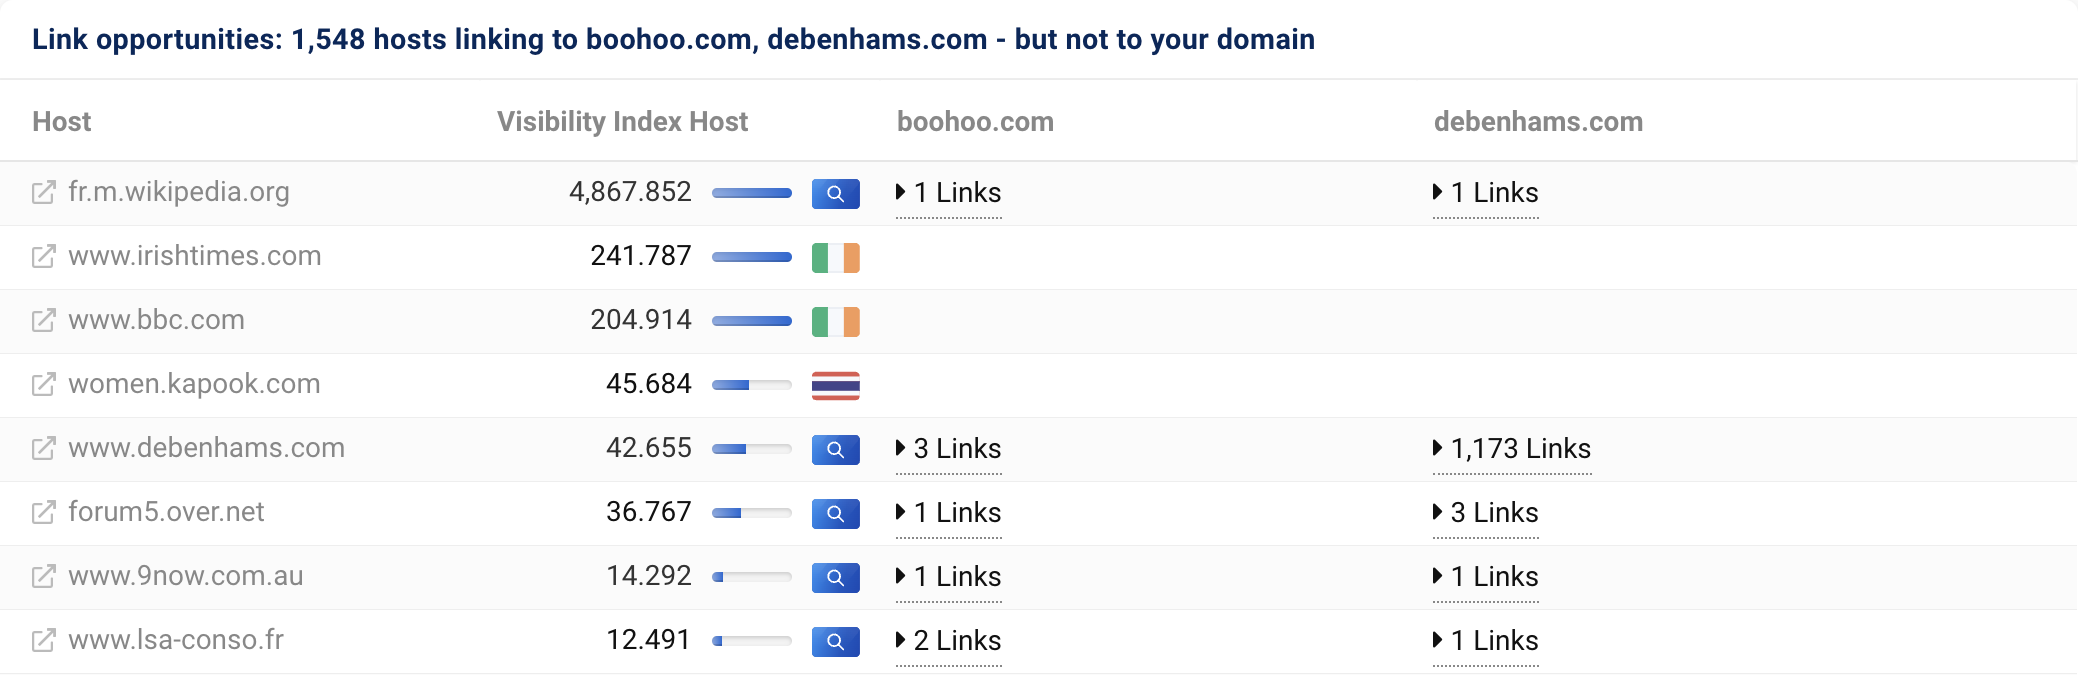 1,548 个主机链接到 boohoo.com 和 debenhams.com，但不链接到我们的域 asos.com。